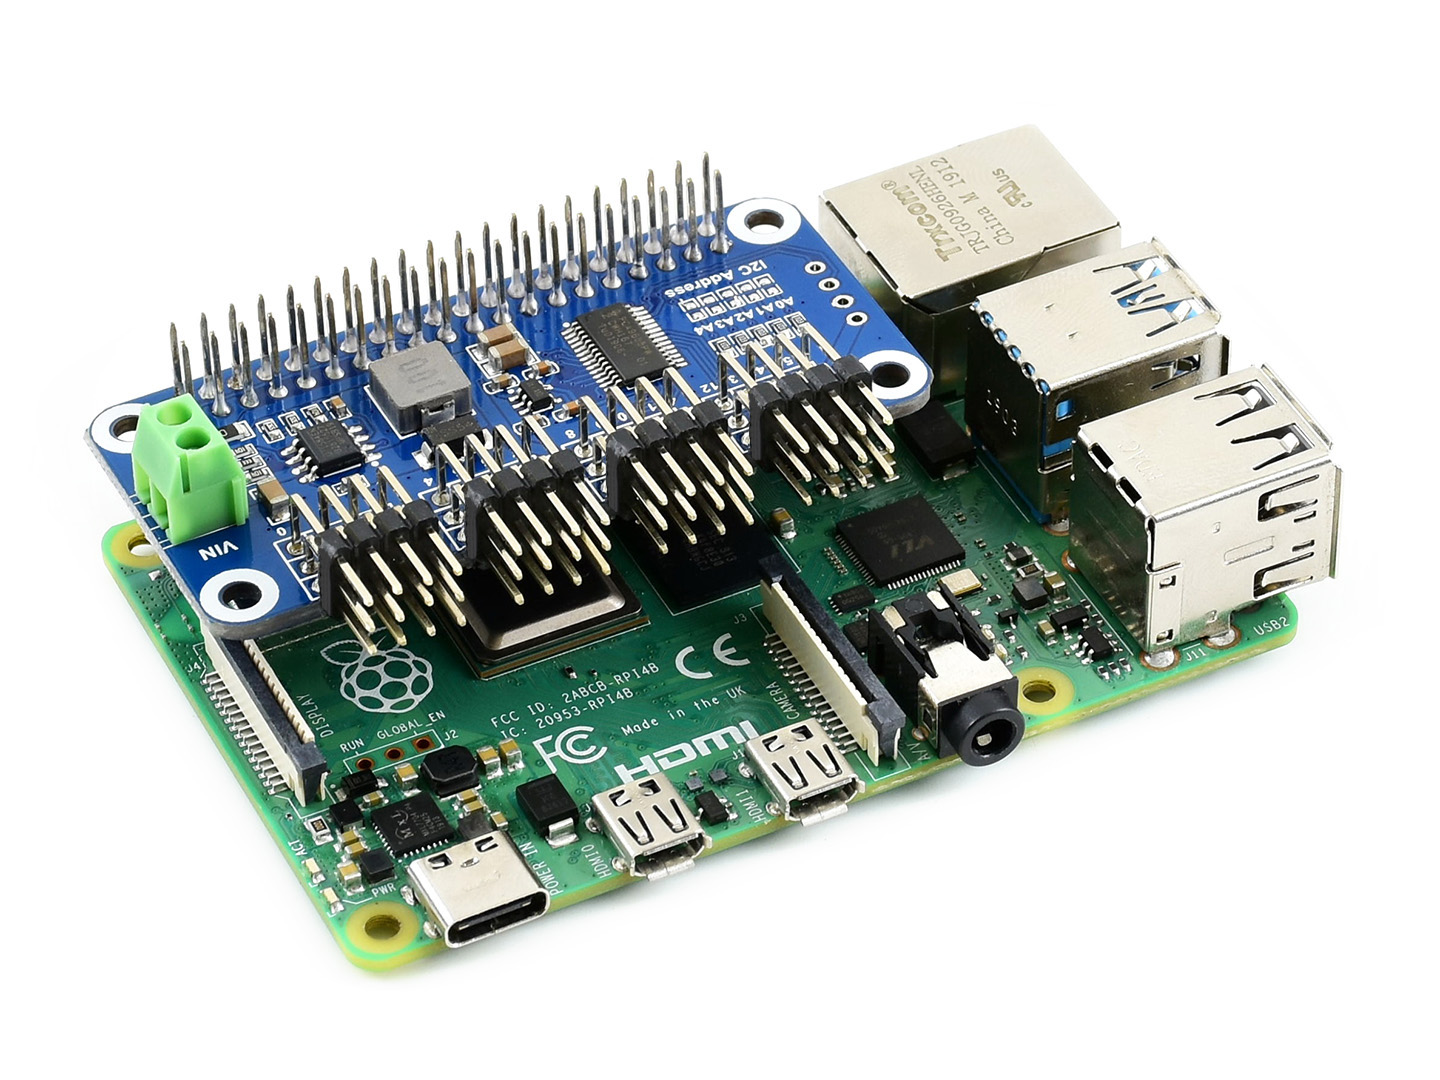 Servo Driver HAT (B) for Raspberry Pi, 16-Channel, 12-bit, I2C